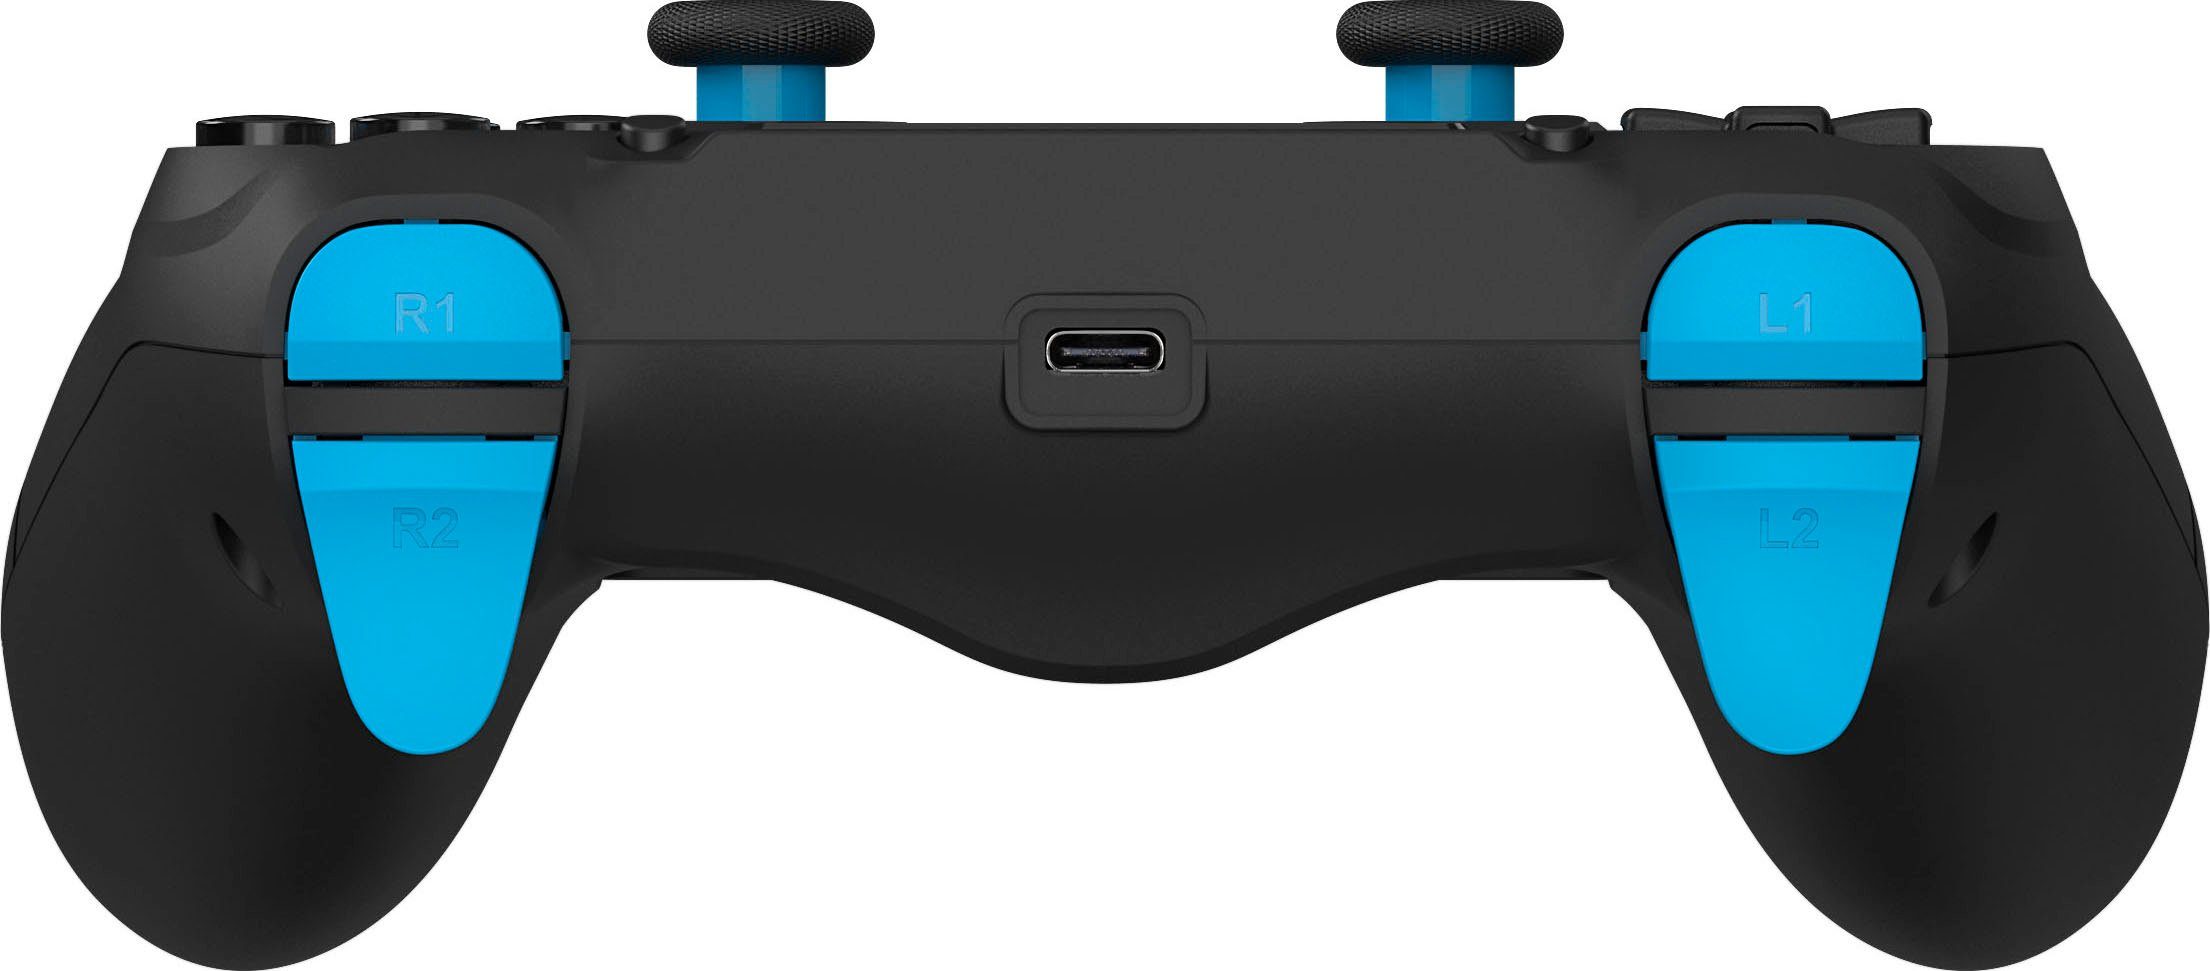 DRAGONSHOCK Mizar für schwarz Controller Wireless PS4